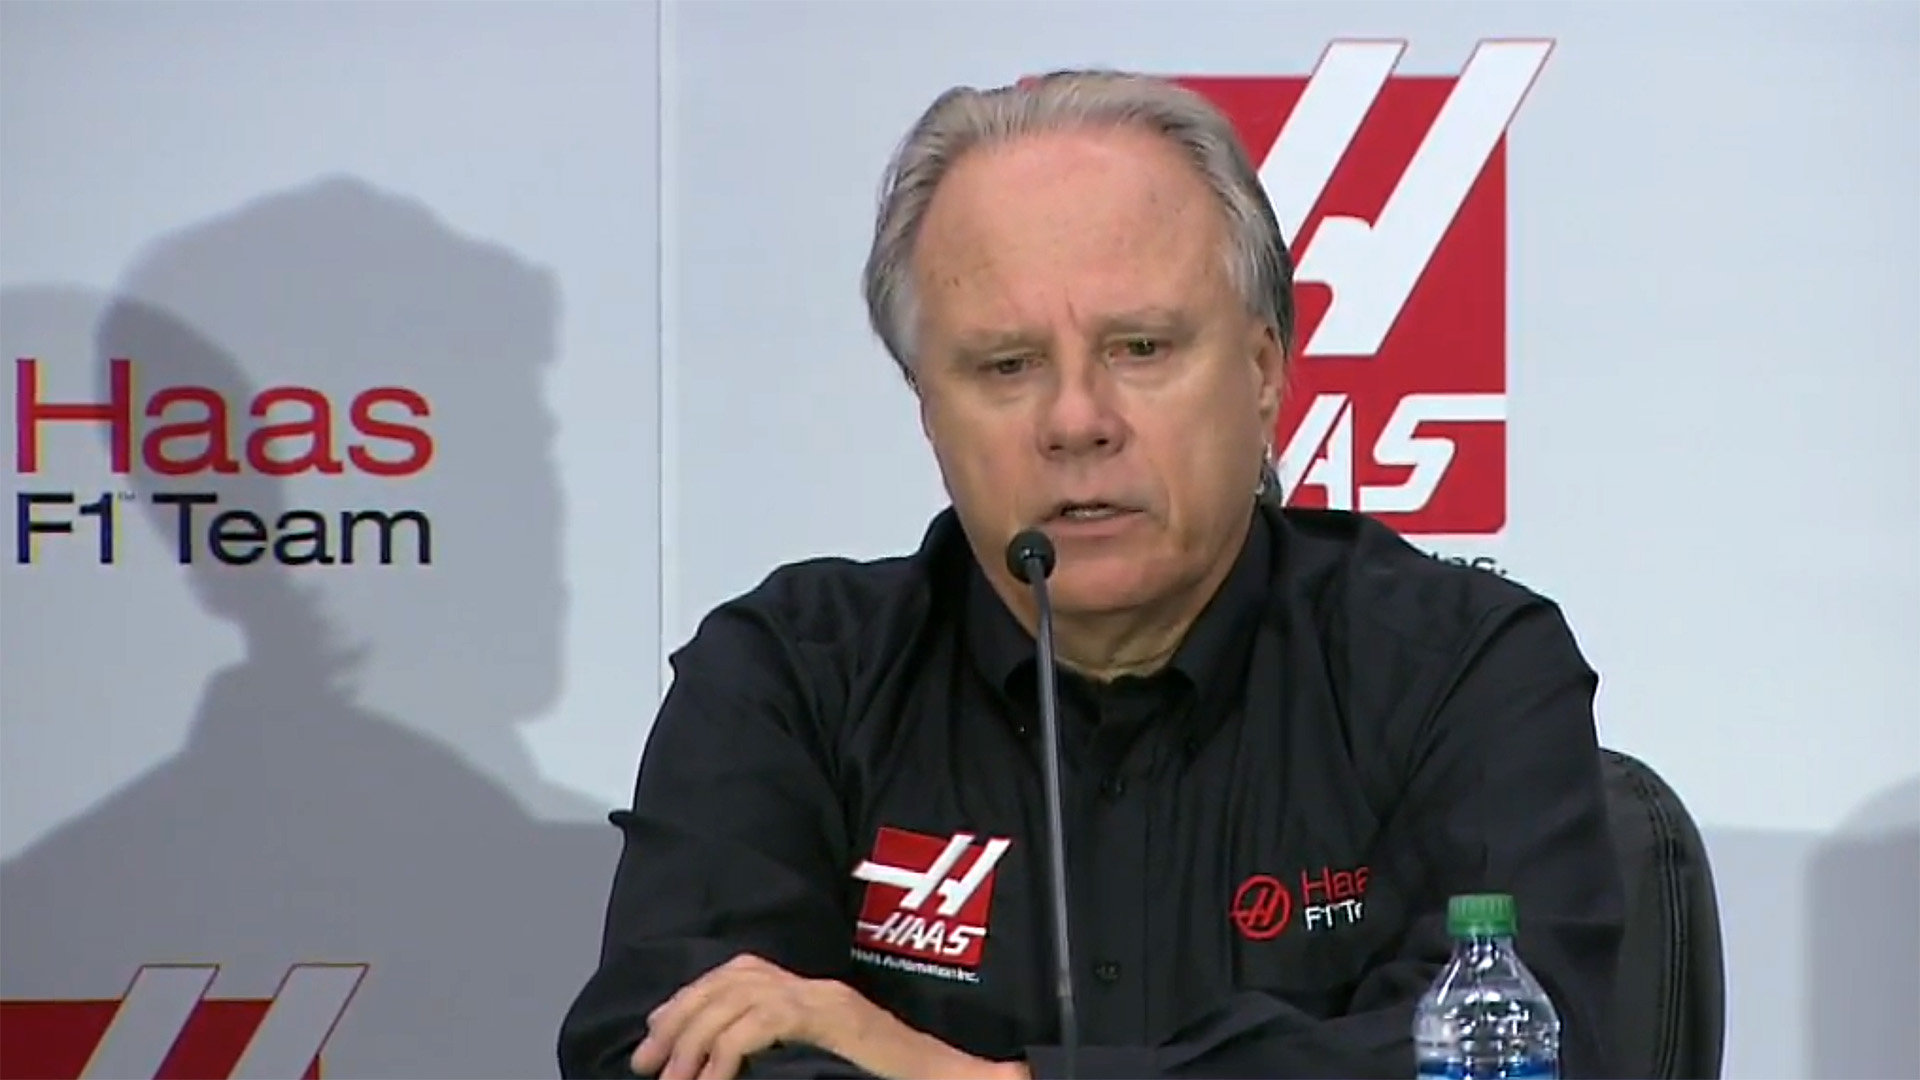 Haas neustále žádá, aby jeho tým nebyl vnímán jako "béčko" Ferrari